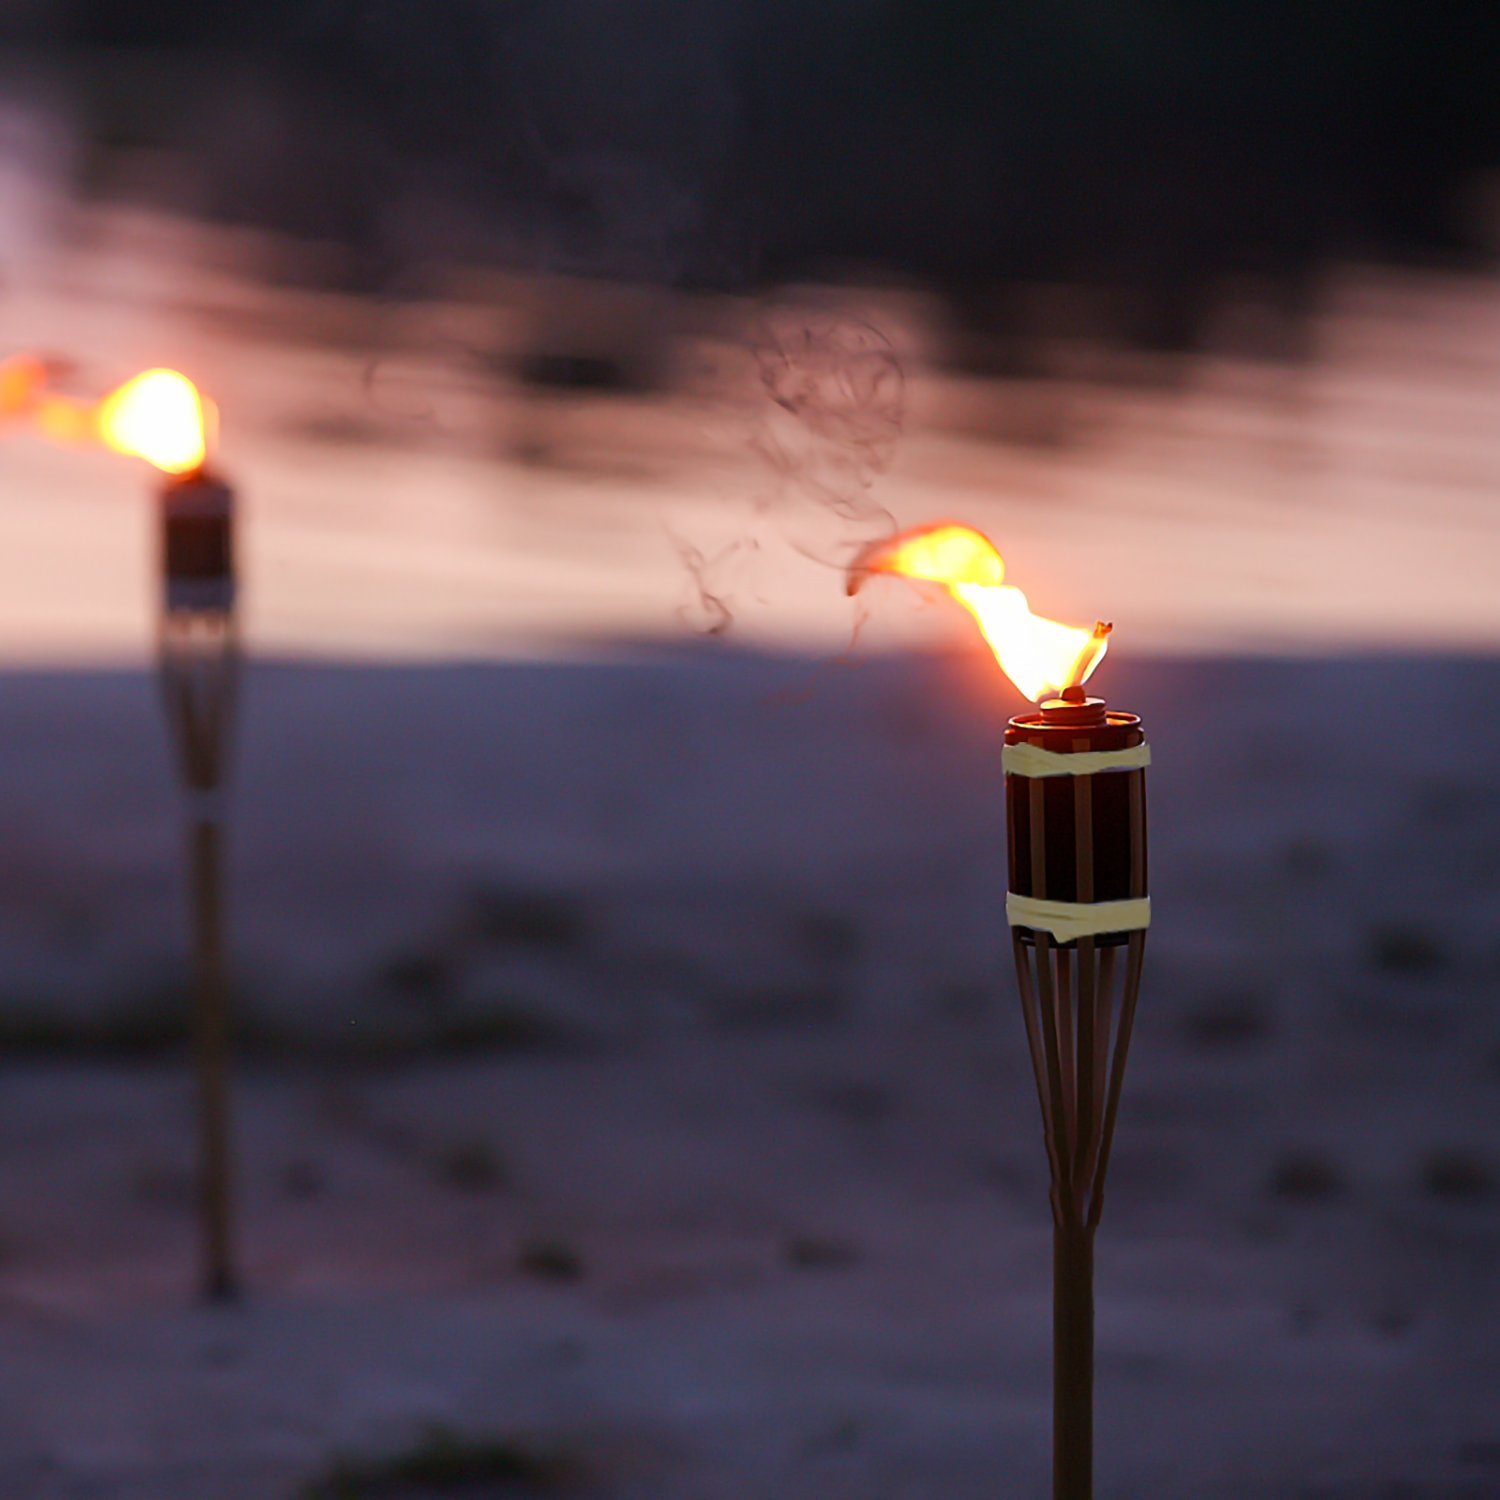 Torch Fackel Leucht Bambus, 10x Gimisgu Fackeln Außen Dekoration Flammenlicht Festliche Gartenfackel Gartenfackel